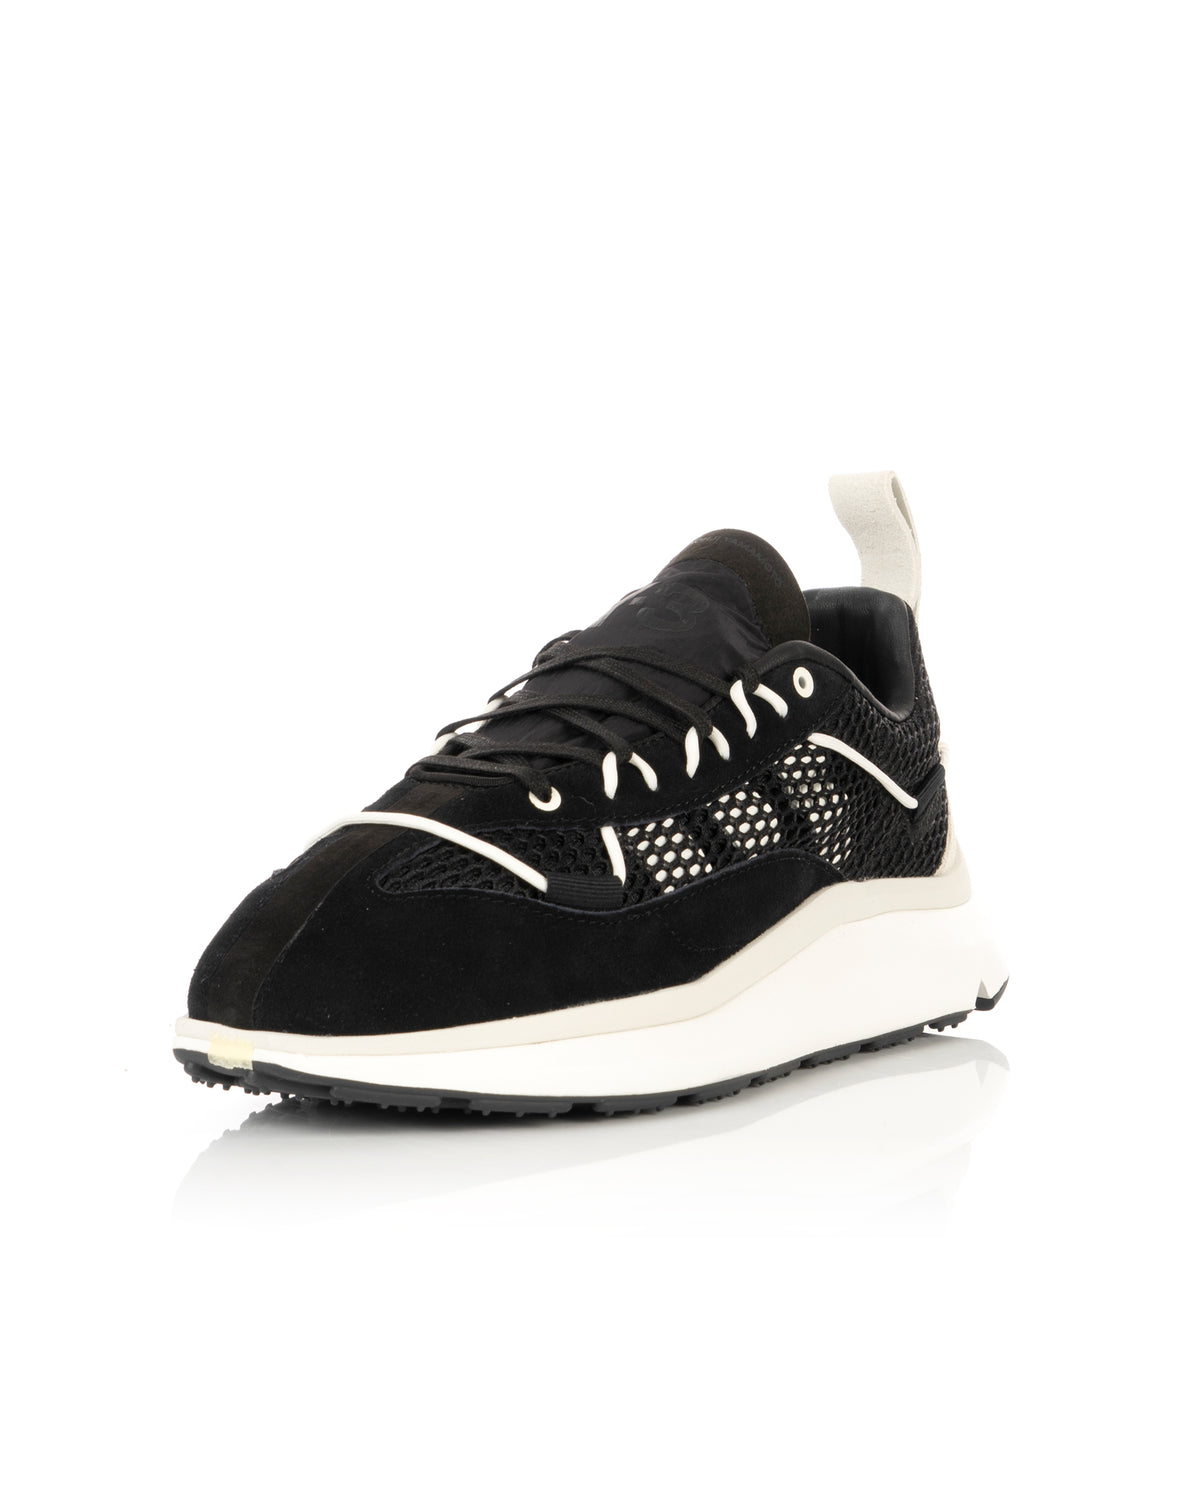 adidas Y-3 | Shiku Run Black / Core White - GW8652 - Concrete